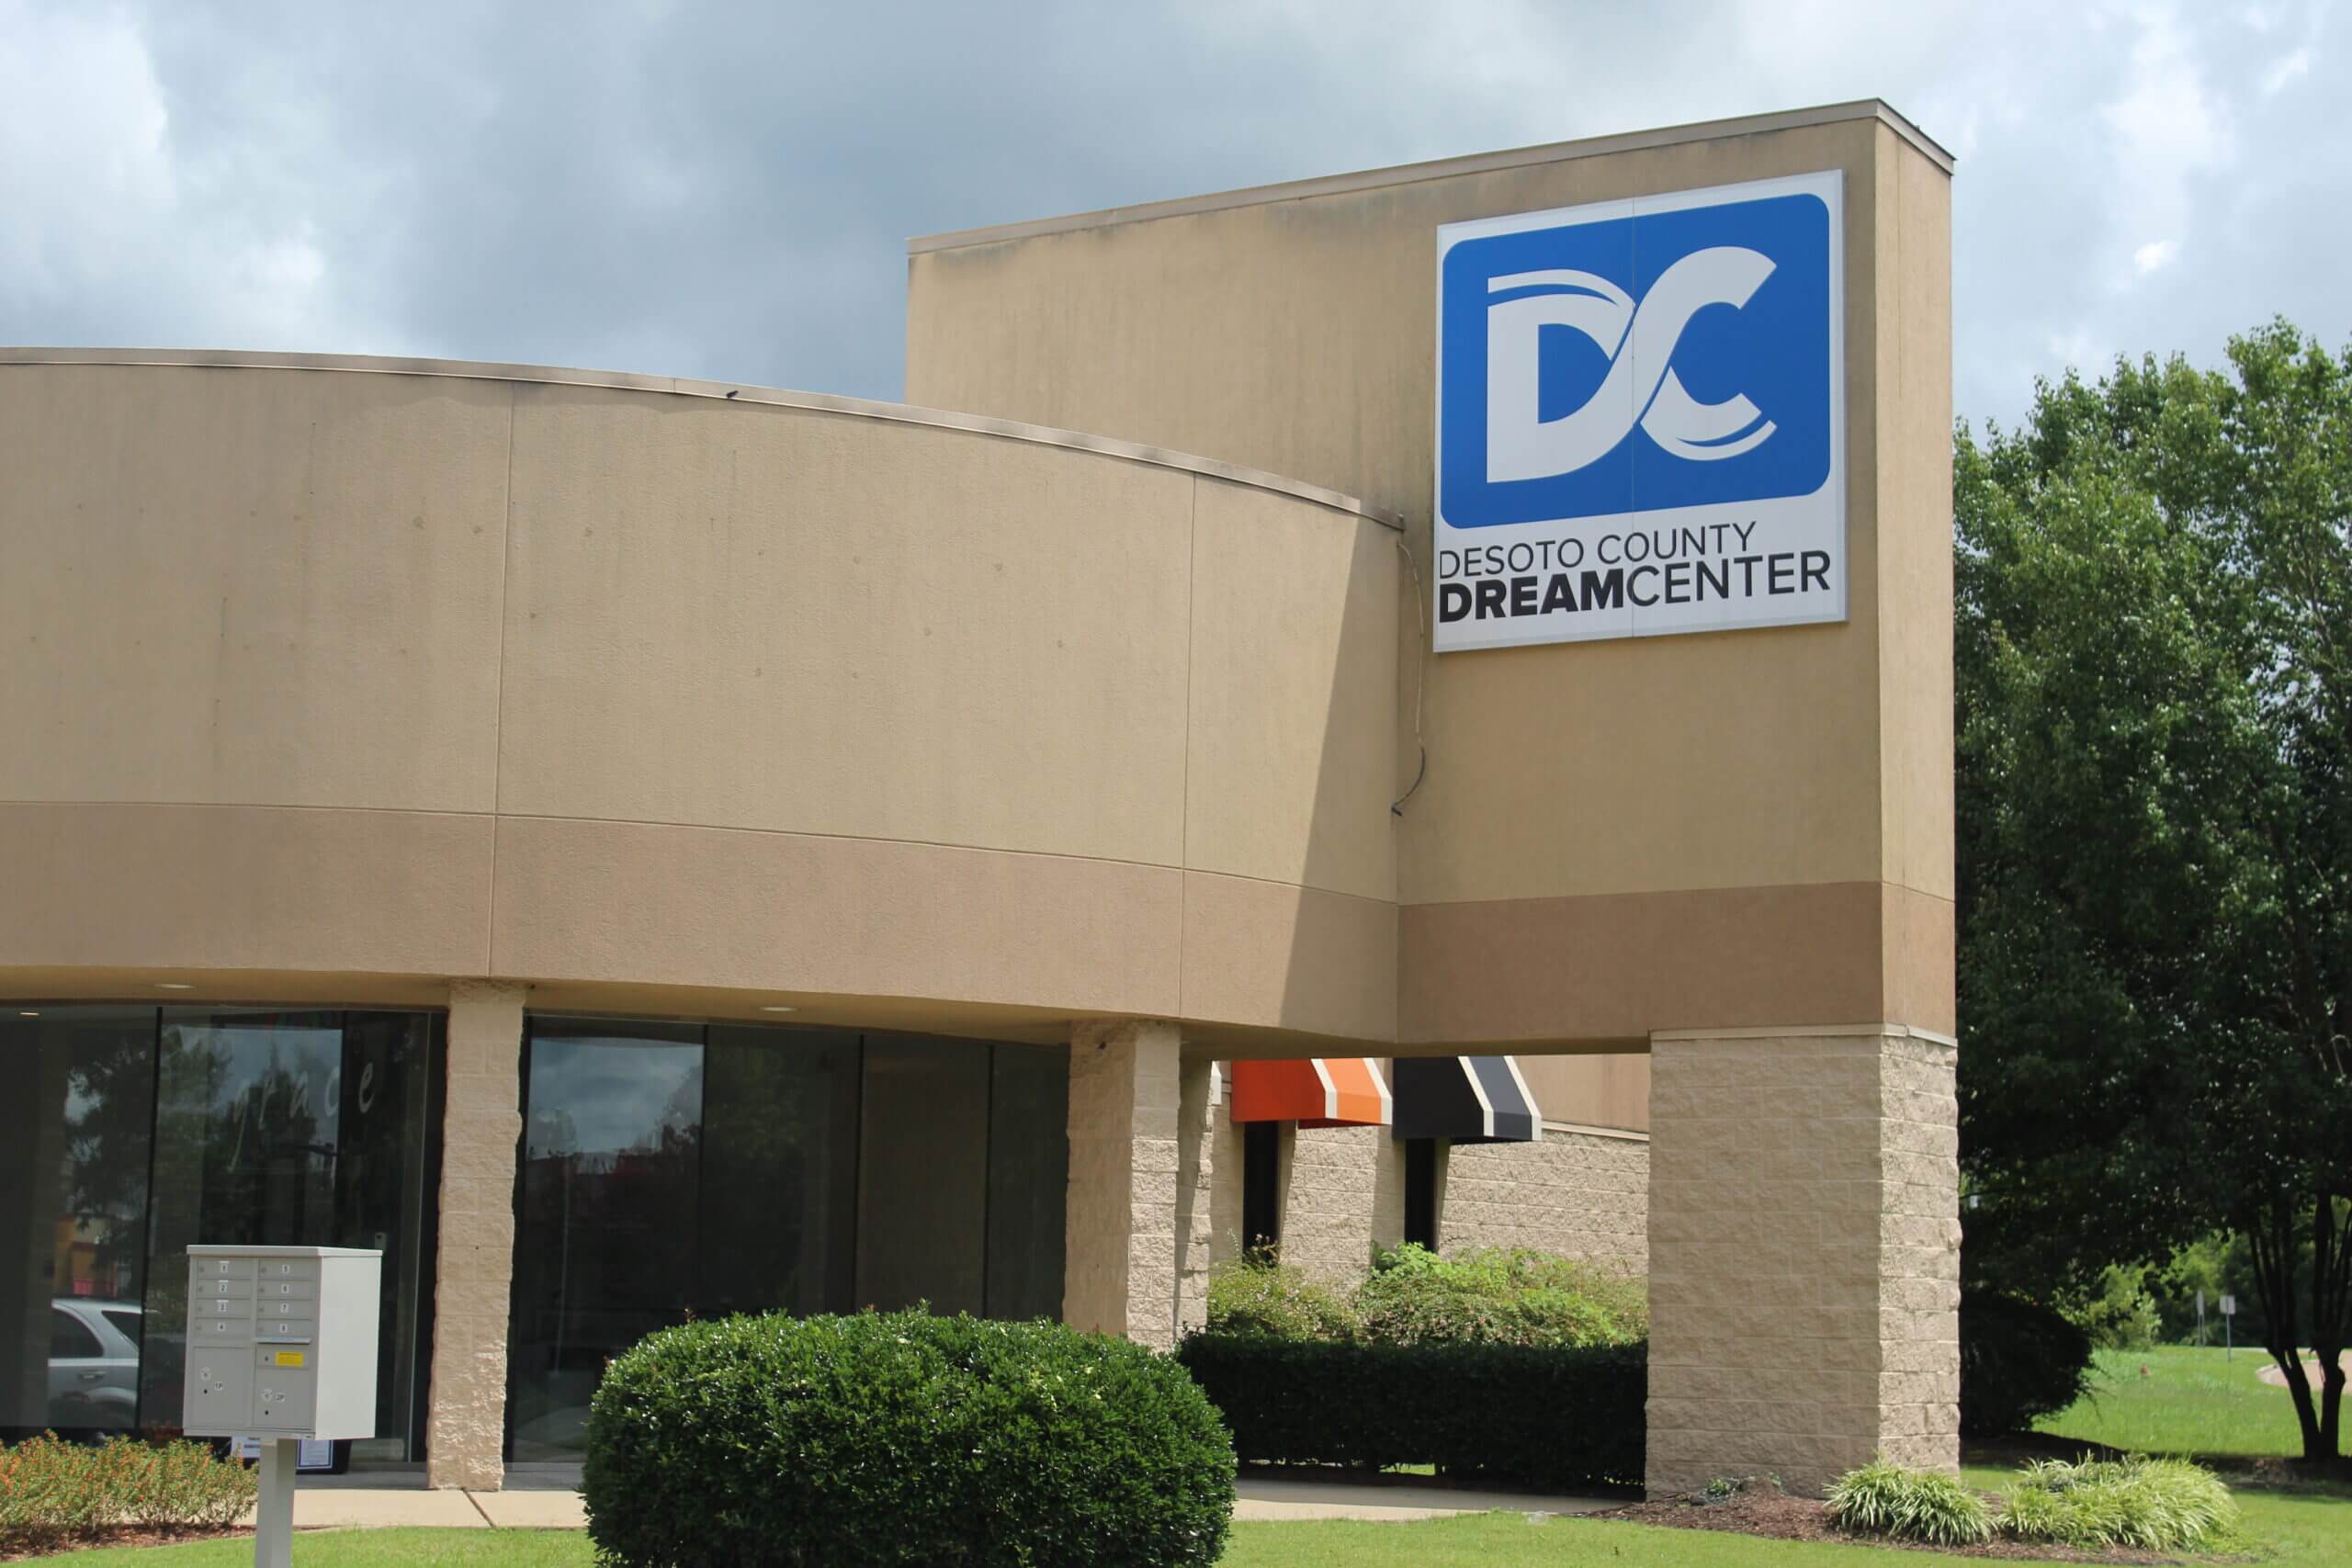 Dance Theatre donates to Dream Center